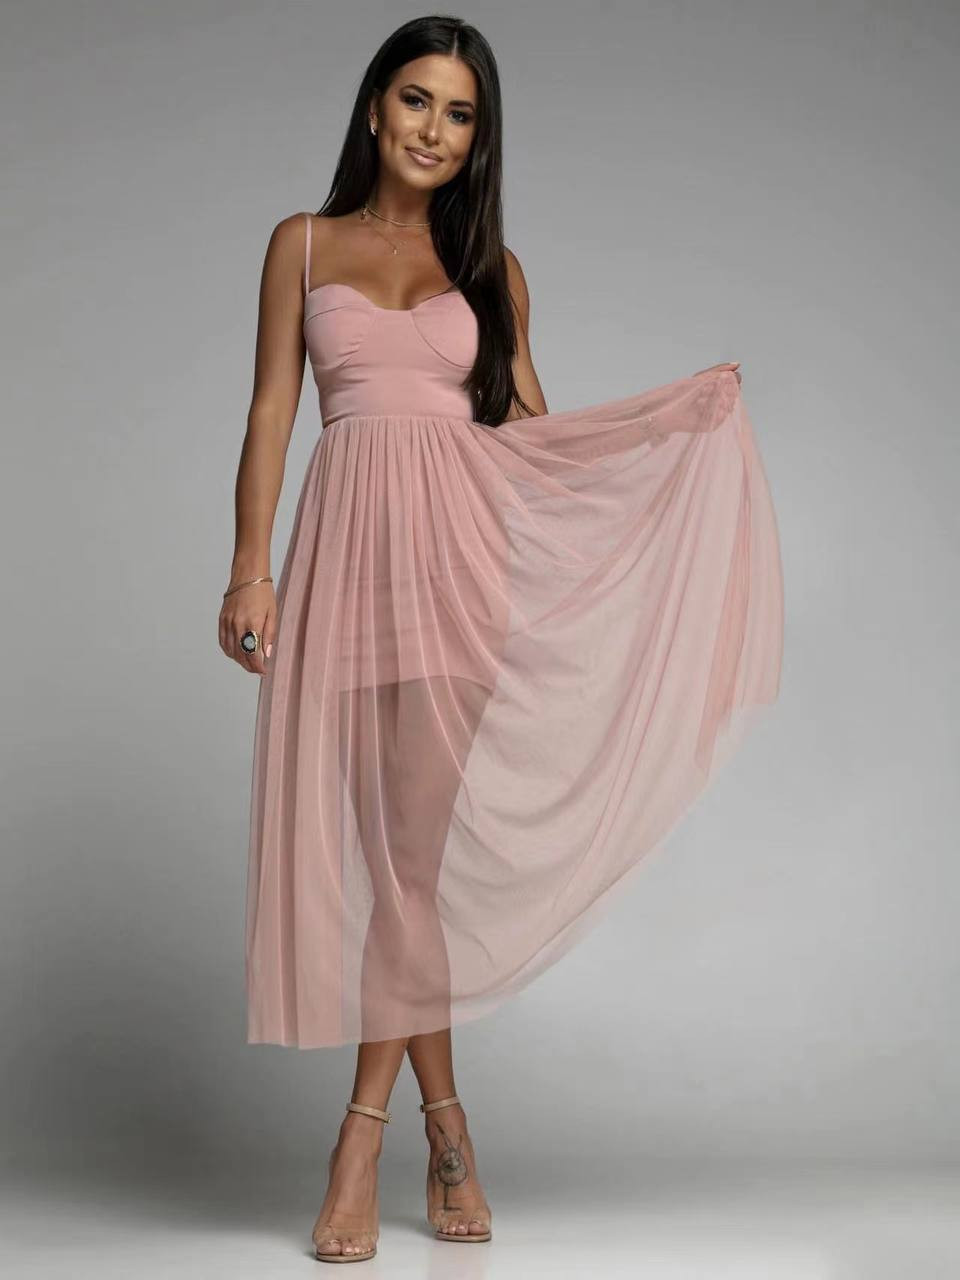 Γυναικείο φόρεμα με τούλι 51461 ροζ